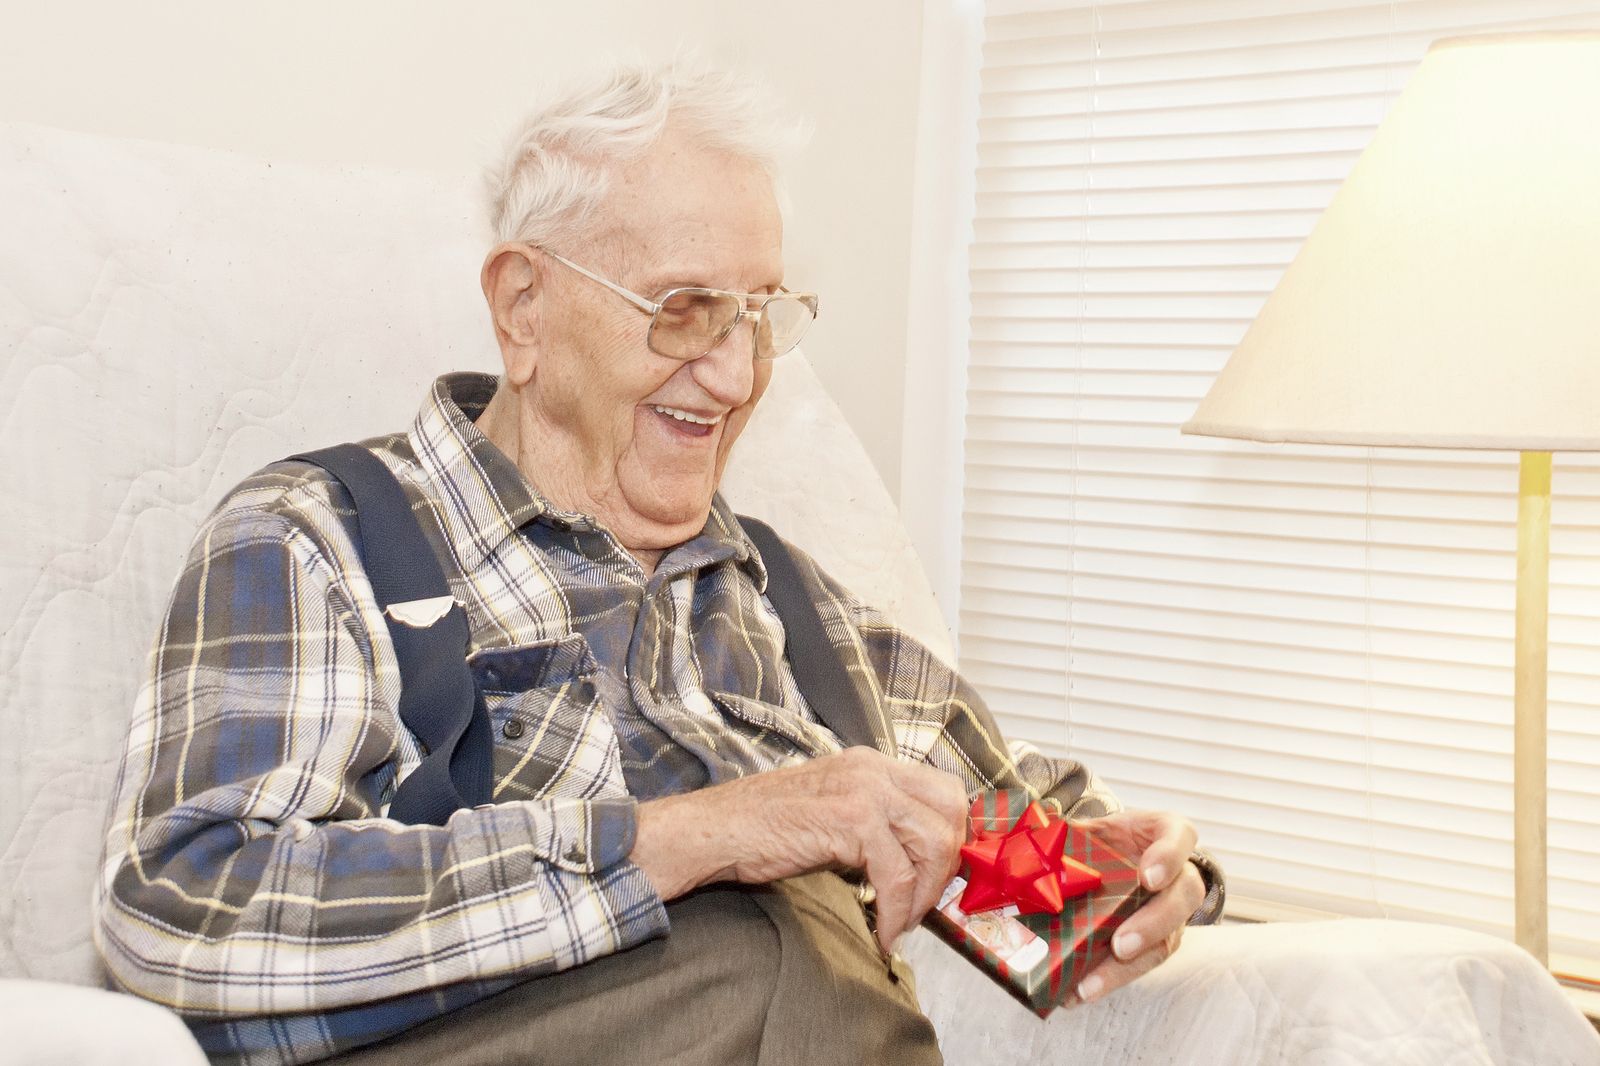 Empatía silver en Navidad: cómo mejorar la relación con los más mayores durante las festividades